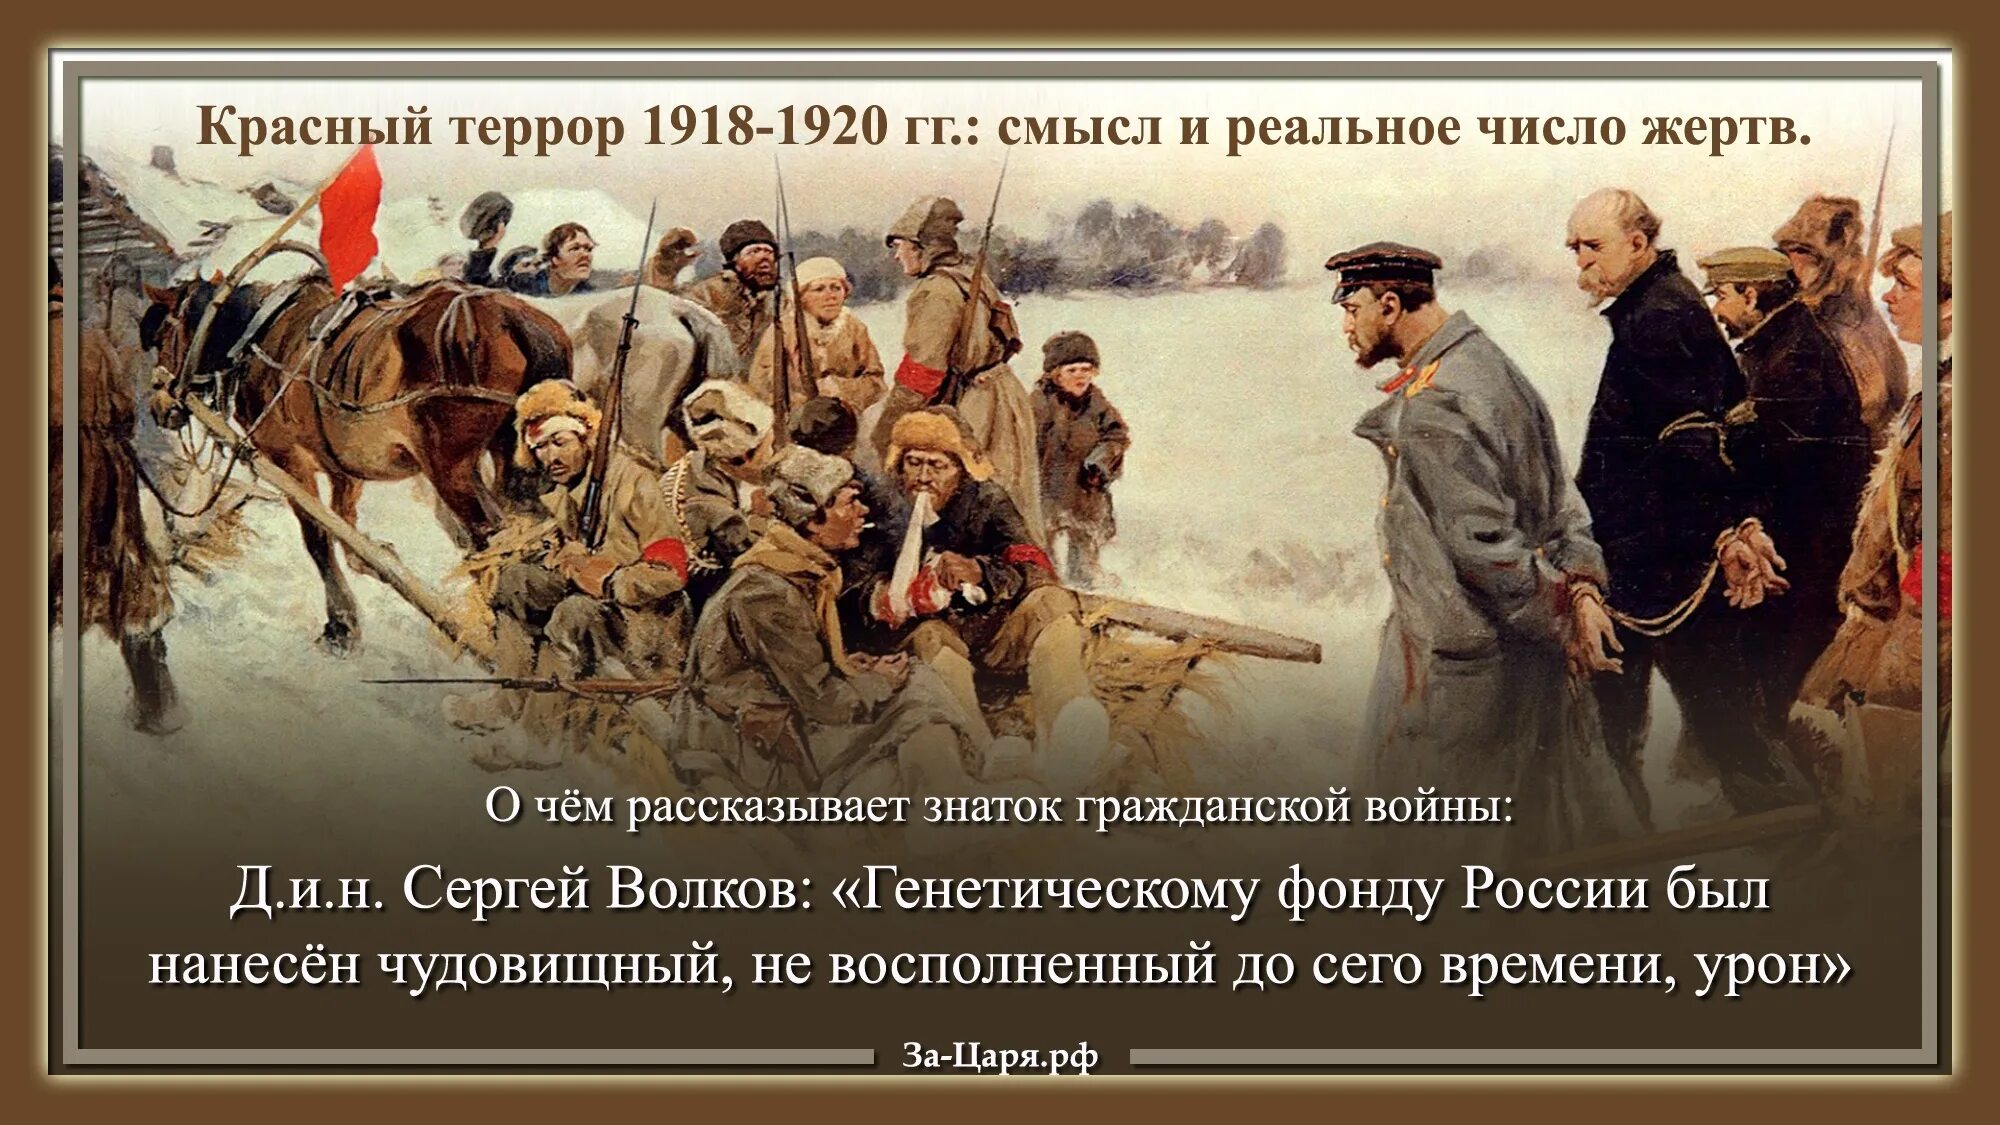 1918 1920 1922. Красный террор и Свердлов. Красный террор в России 1918-1923.